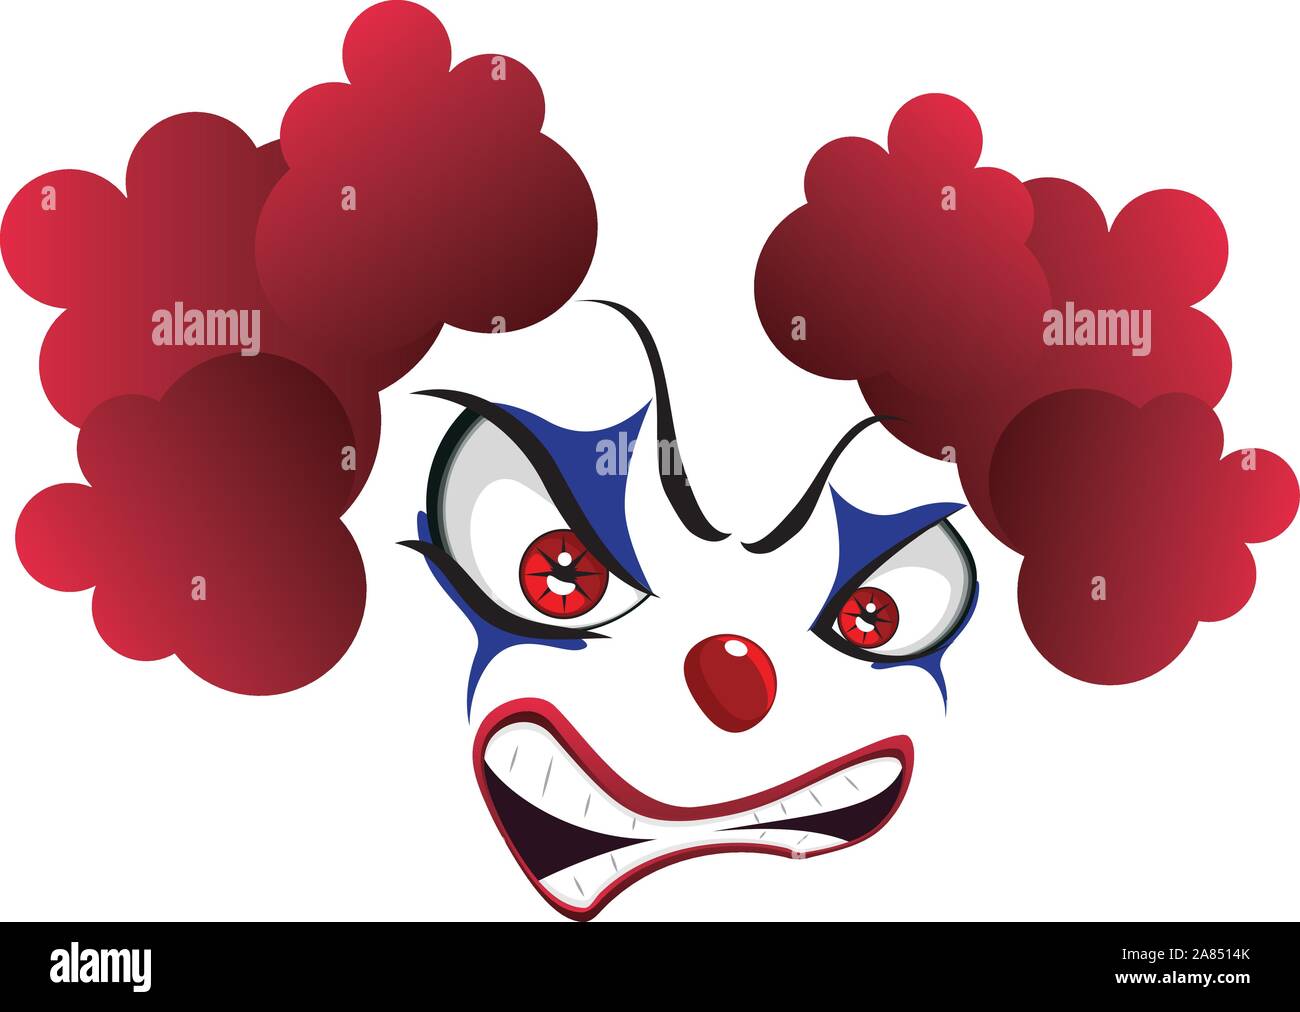 Scary Cartoon Clown Faces